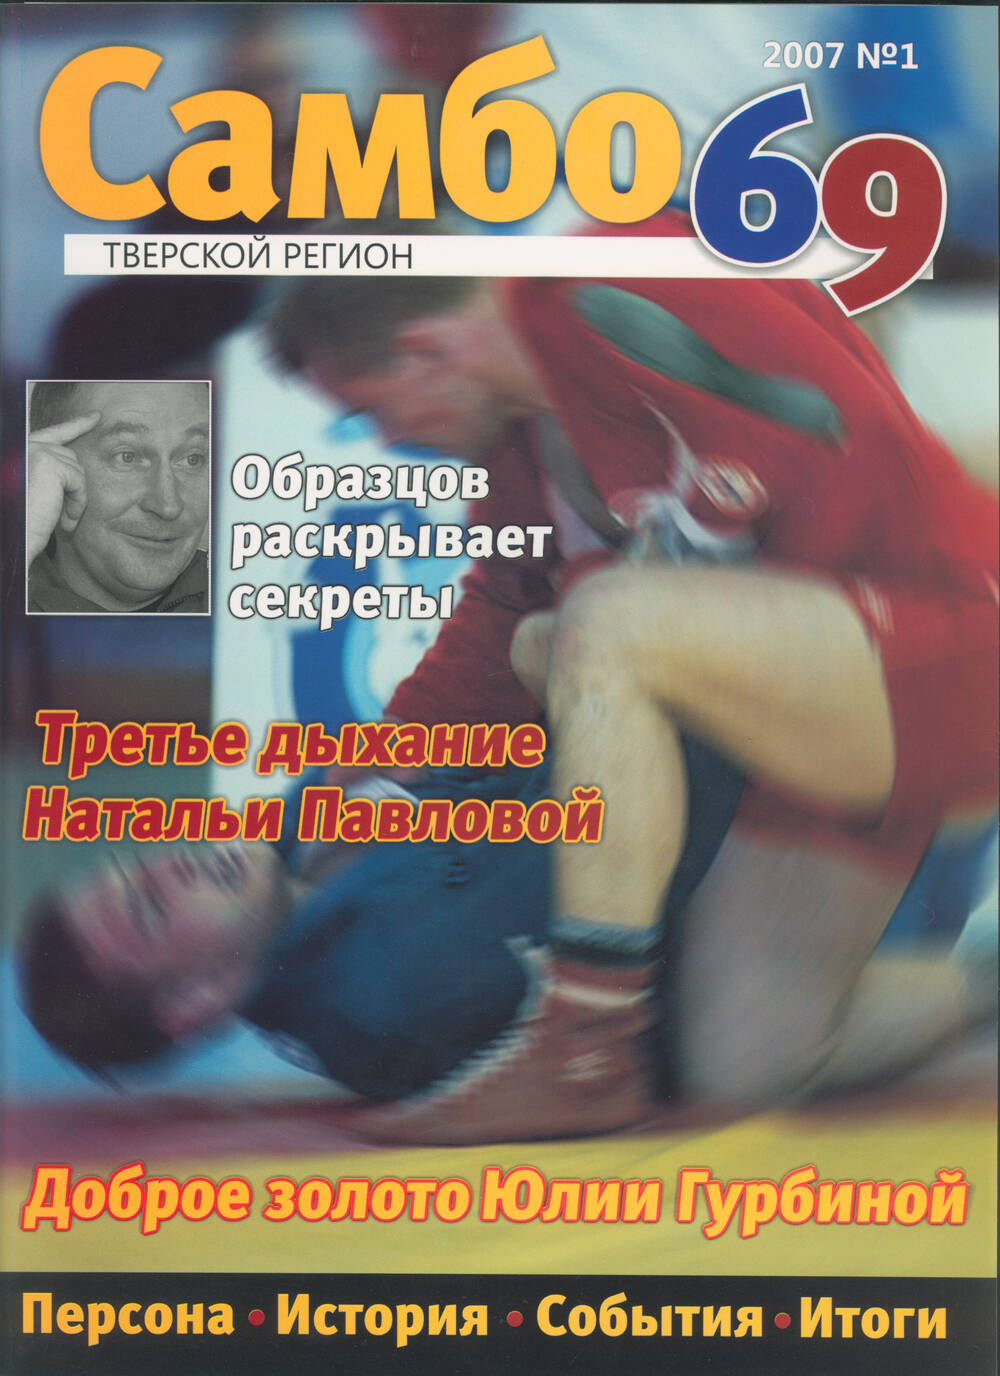 Журнал Самбо 69 № 1, 2007 г. / Тверское региональное отделение общероссийской физкультурно-спортивной общественной организации